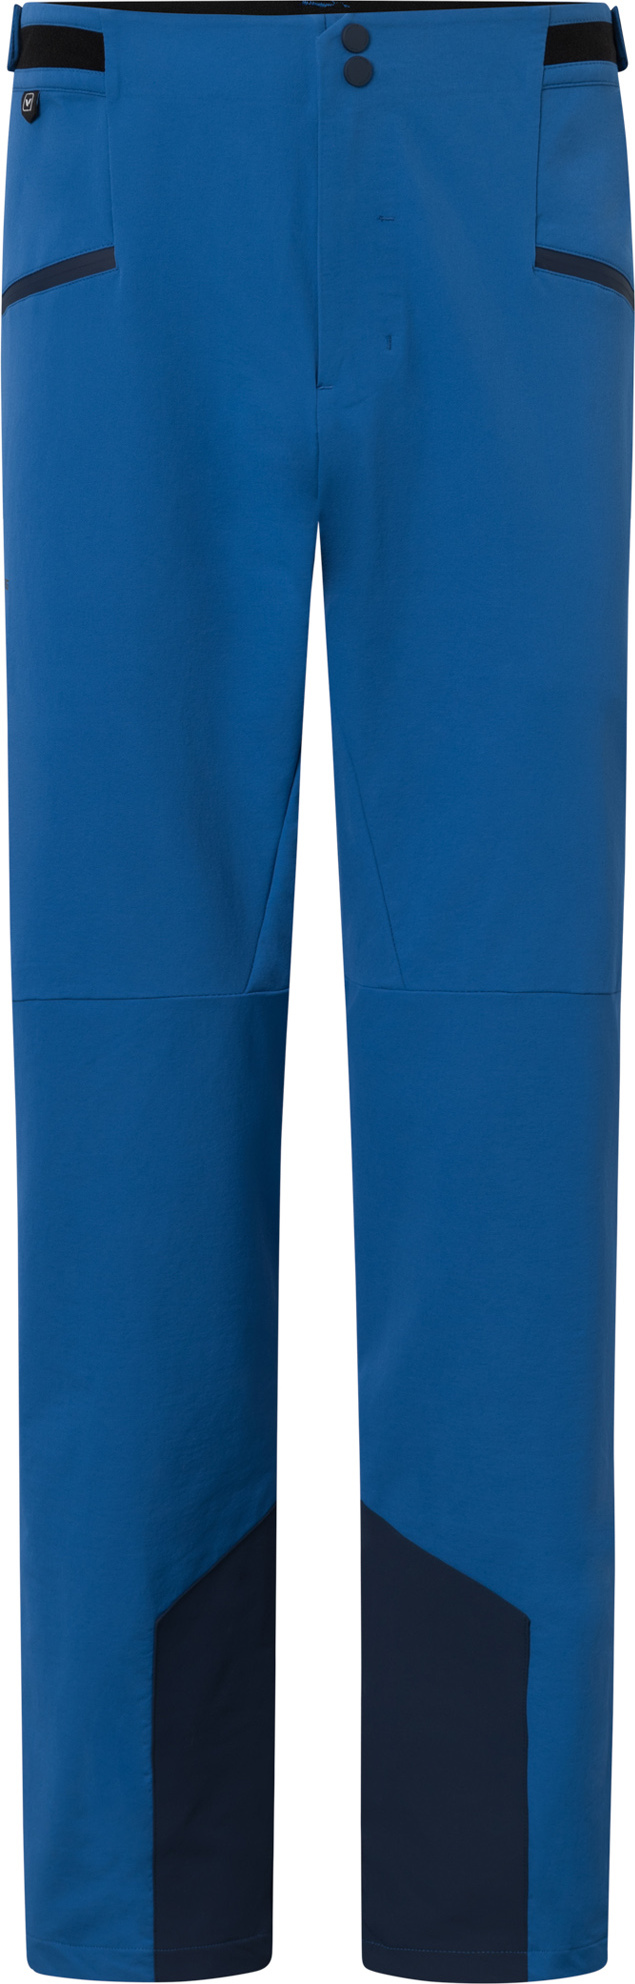 Pánské outdoorové kalhoty VIKING Expander Warm modrá Velikost: M